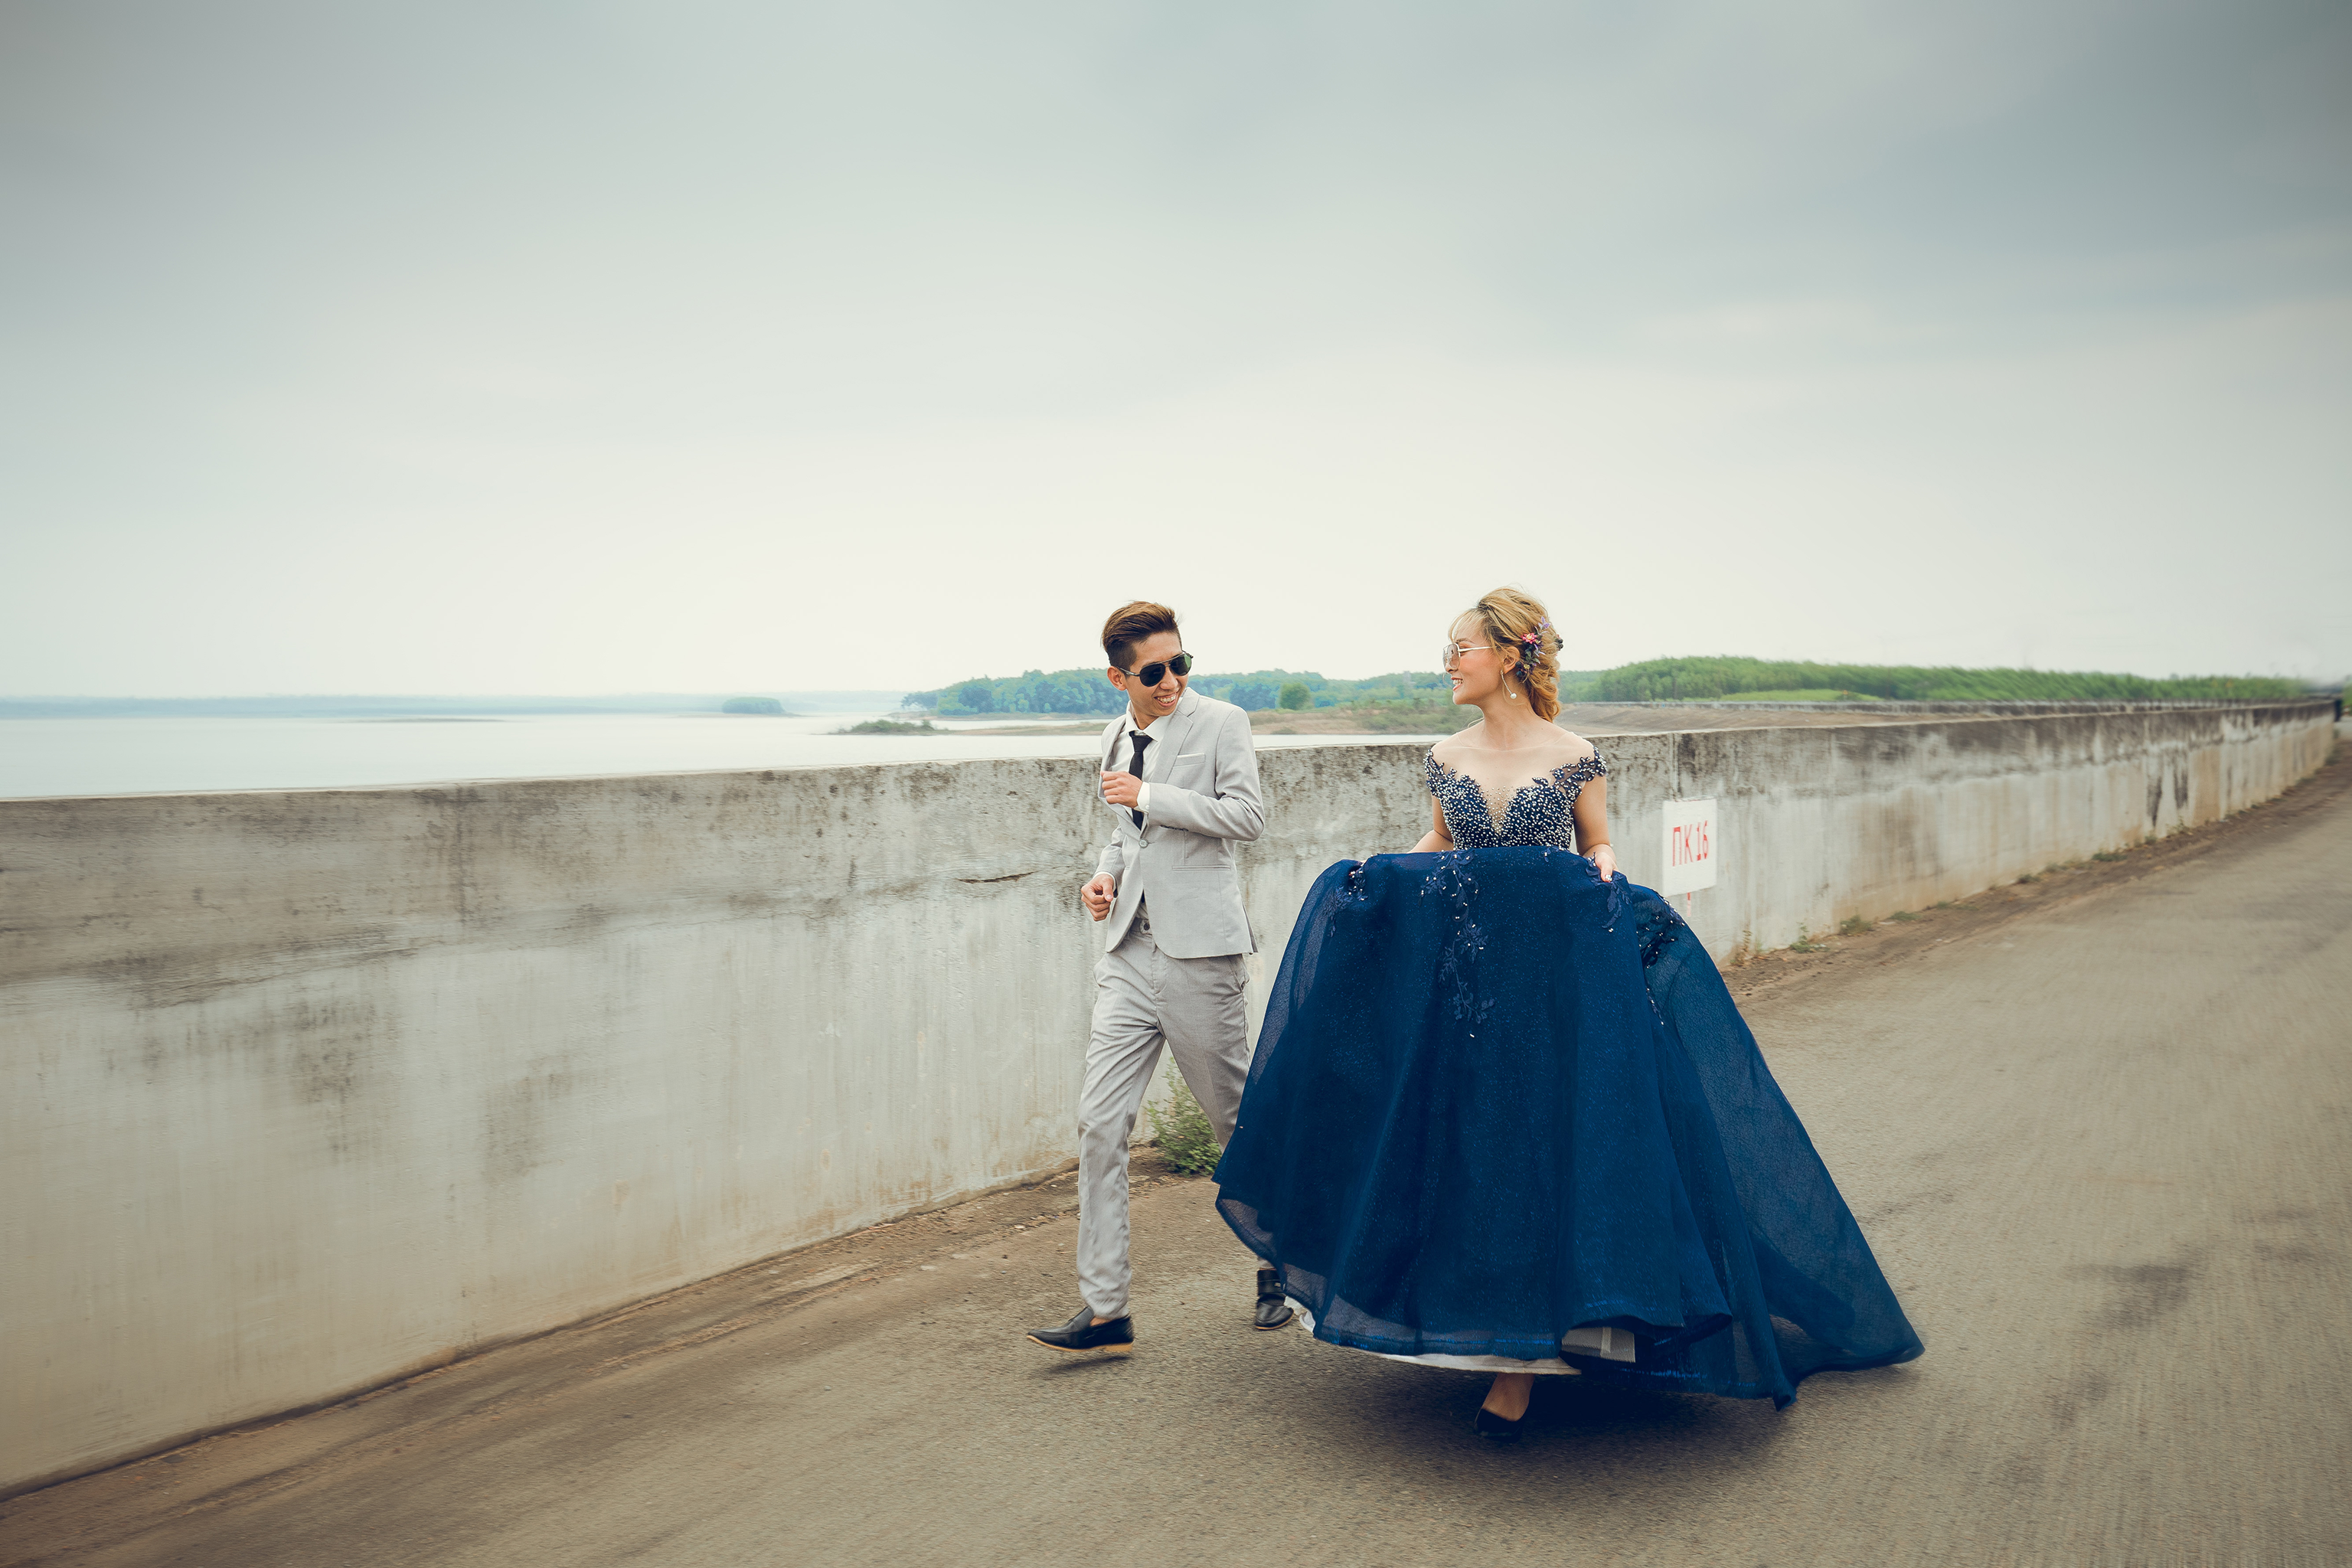 Bạn đang muốn tìm một nơi chụp hình cưới đẹp ở Trảng Bom? Chúng tôi sẽ làm hài lòng bạn với những bức ảnh cưới đẹp nhất tại nơi đây. Với không gian xanh mát và tươi trẻ, chúng tôi đảm bảo rằng bạn sẽ có những bức ảnh cưới đẹp nhất với không gian thiên nhiên tuyệt đẹp.